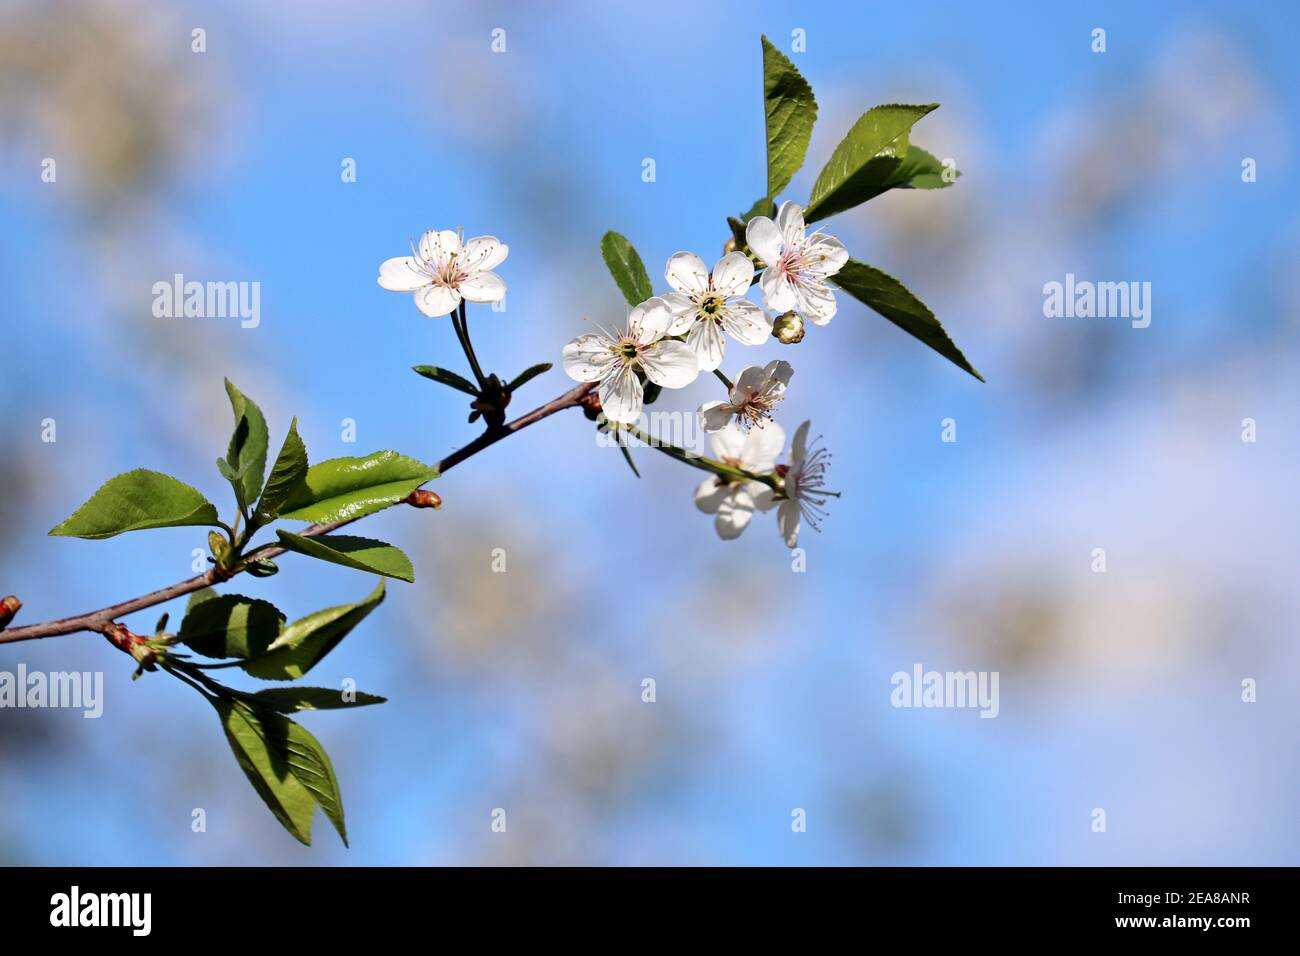 Fleur de cerisier au printemps sur fond de ciel bleu. Fleurs blanches sur une branche dans un jardin, couleurs douces Banque D'Images